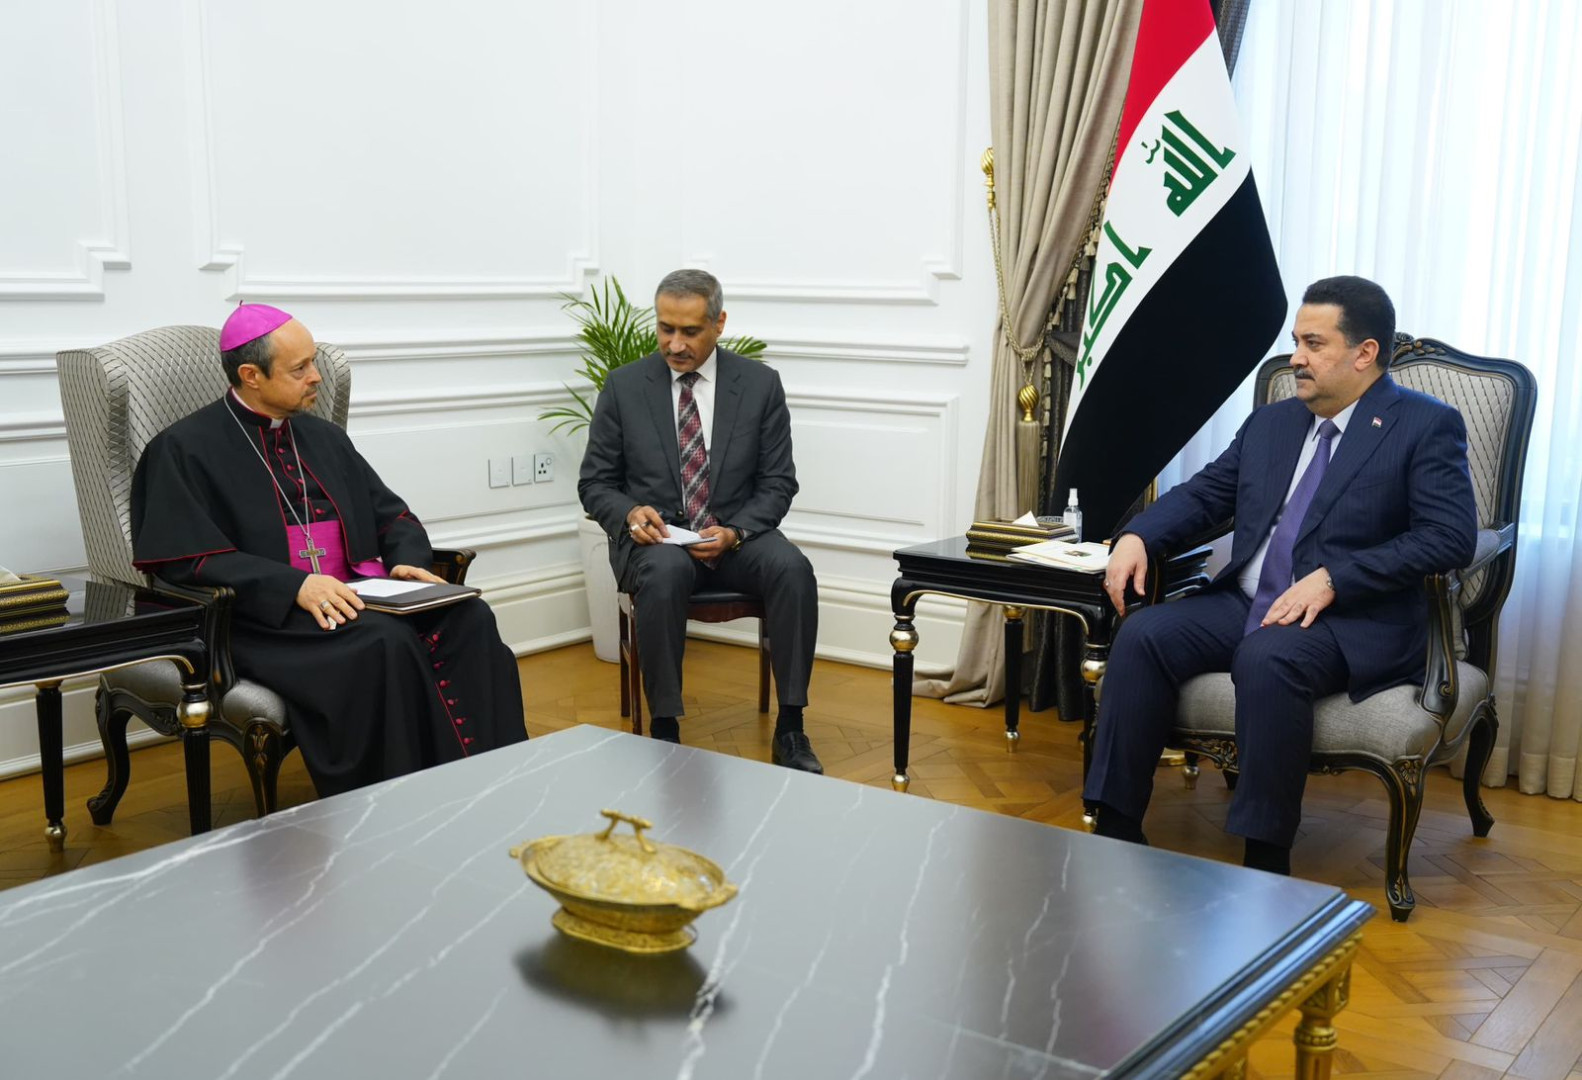 PM Al-Sudani Vatican's role in supporting Iraq's peace and unity